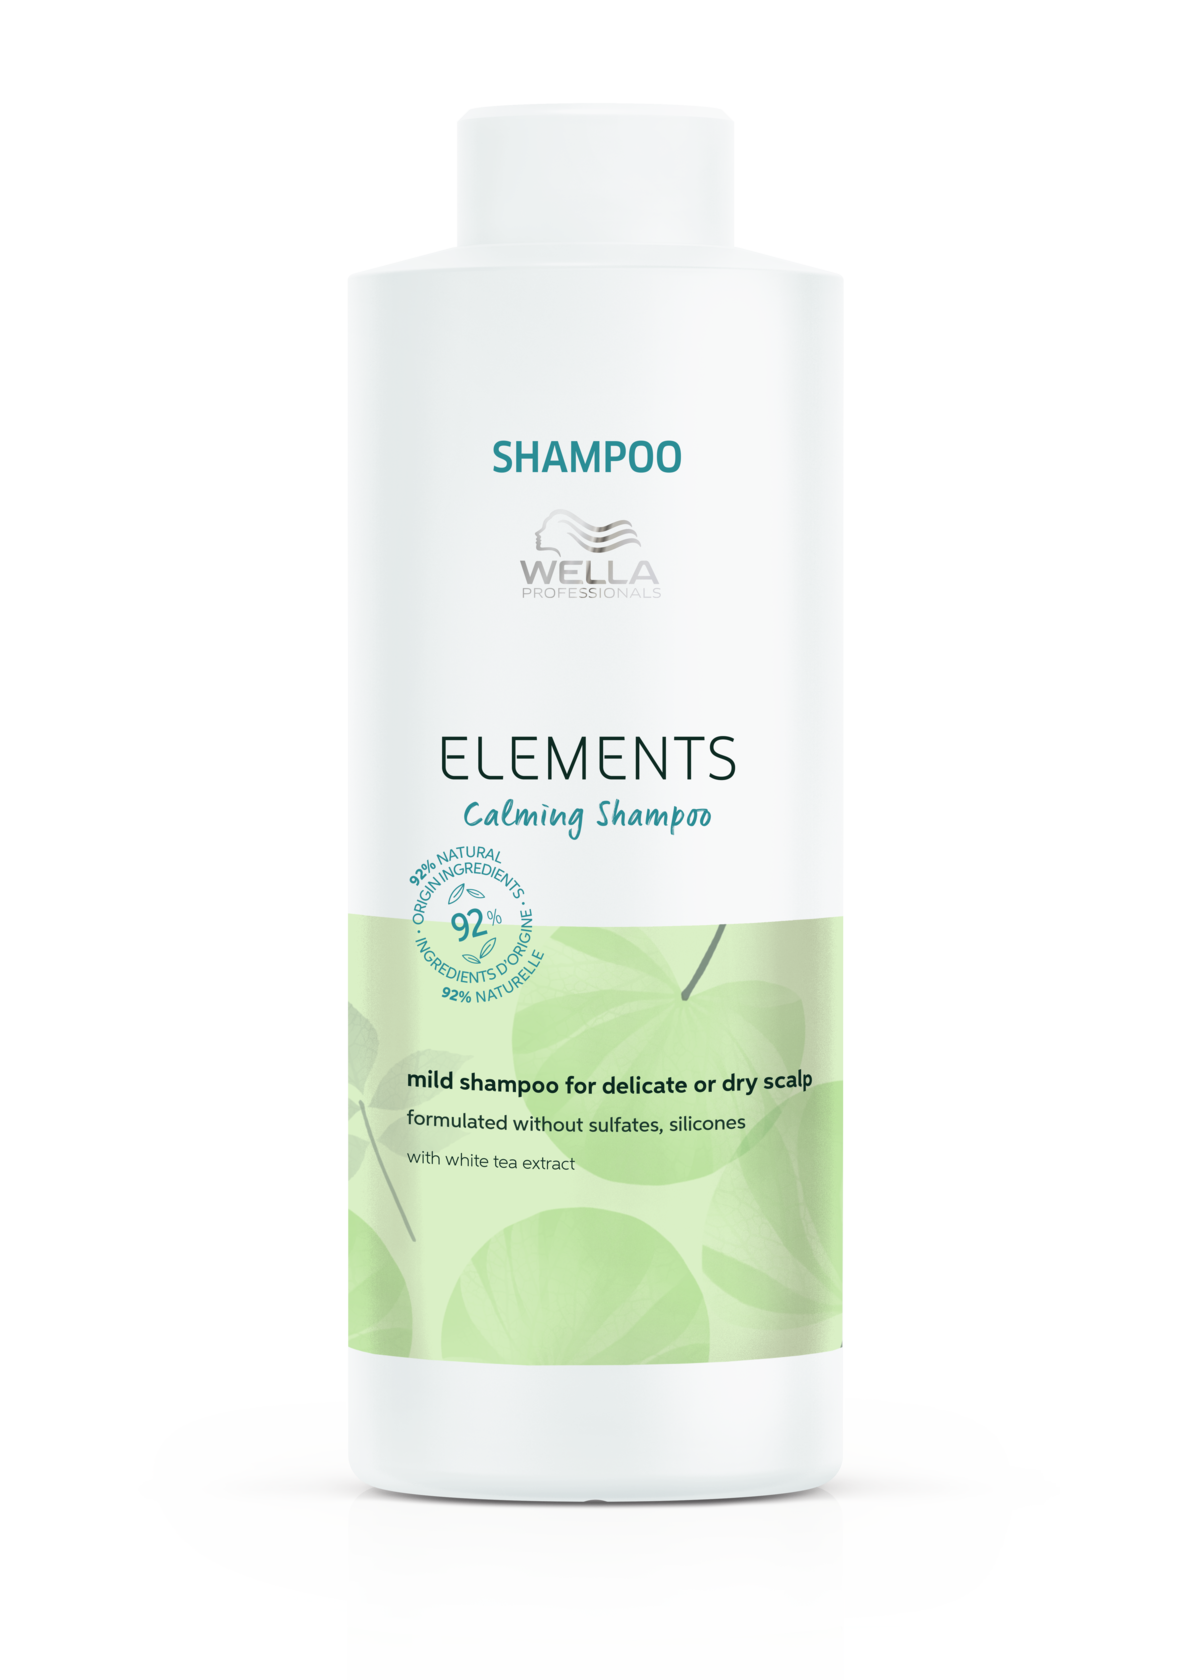 Шампуни для волос:  Wella Professionals -  Успокаивающий мягкий шампунь для чувствительной или сухой кожи головы Elements Calming Shampoo (1000 мл)